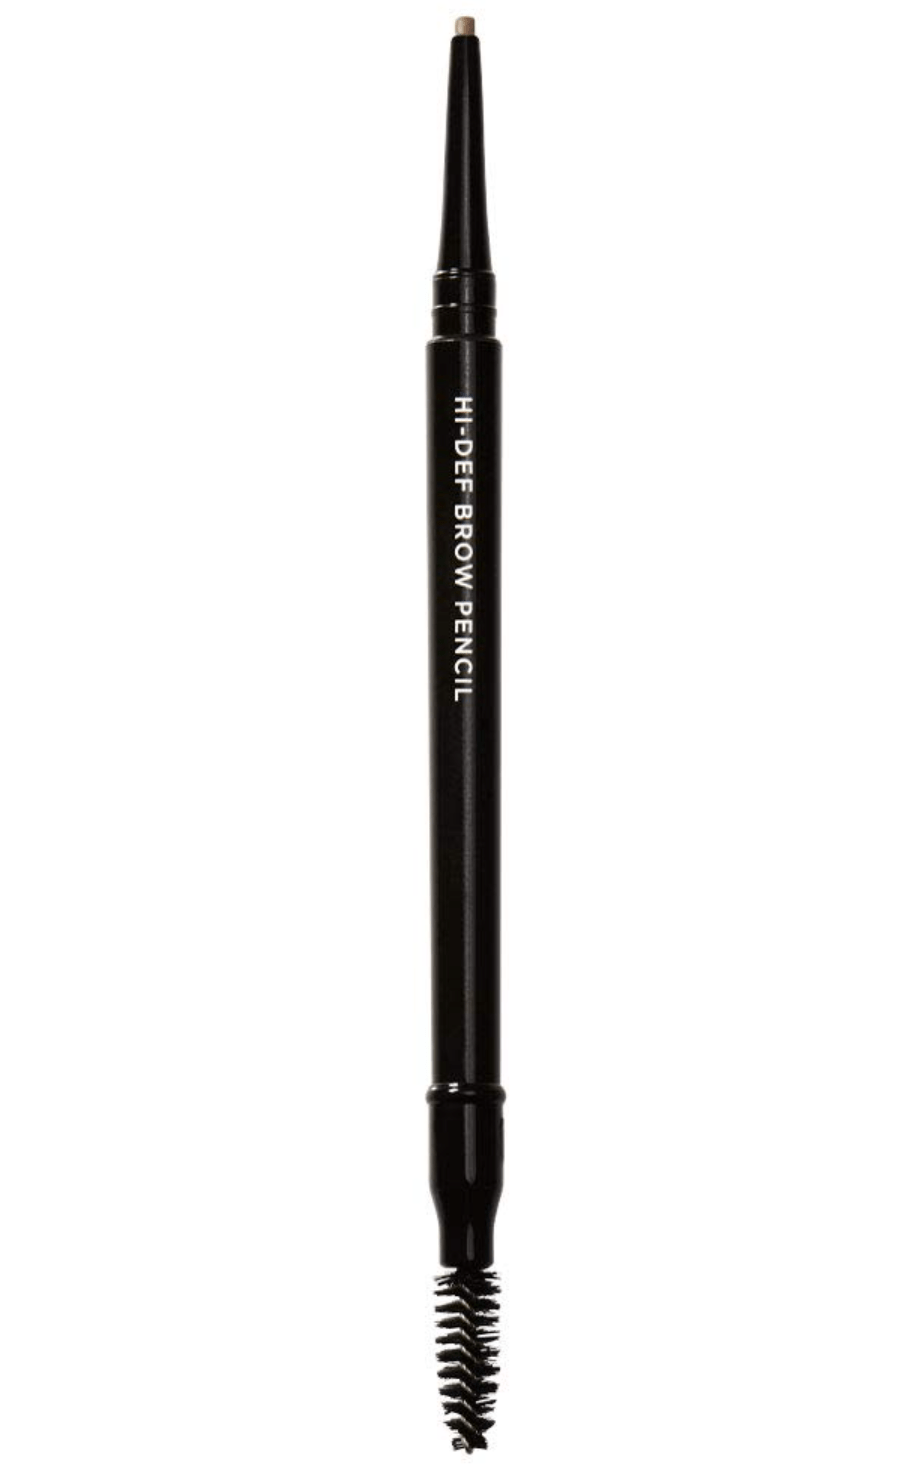 RevitaLash Hi-Def Brow Pencil, Hypoallergenic (3 Colors) - Dryeye Rescue